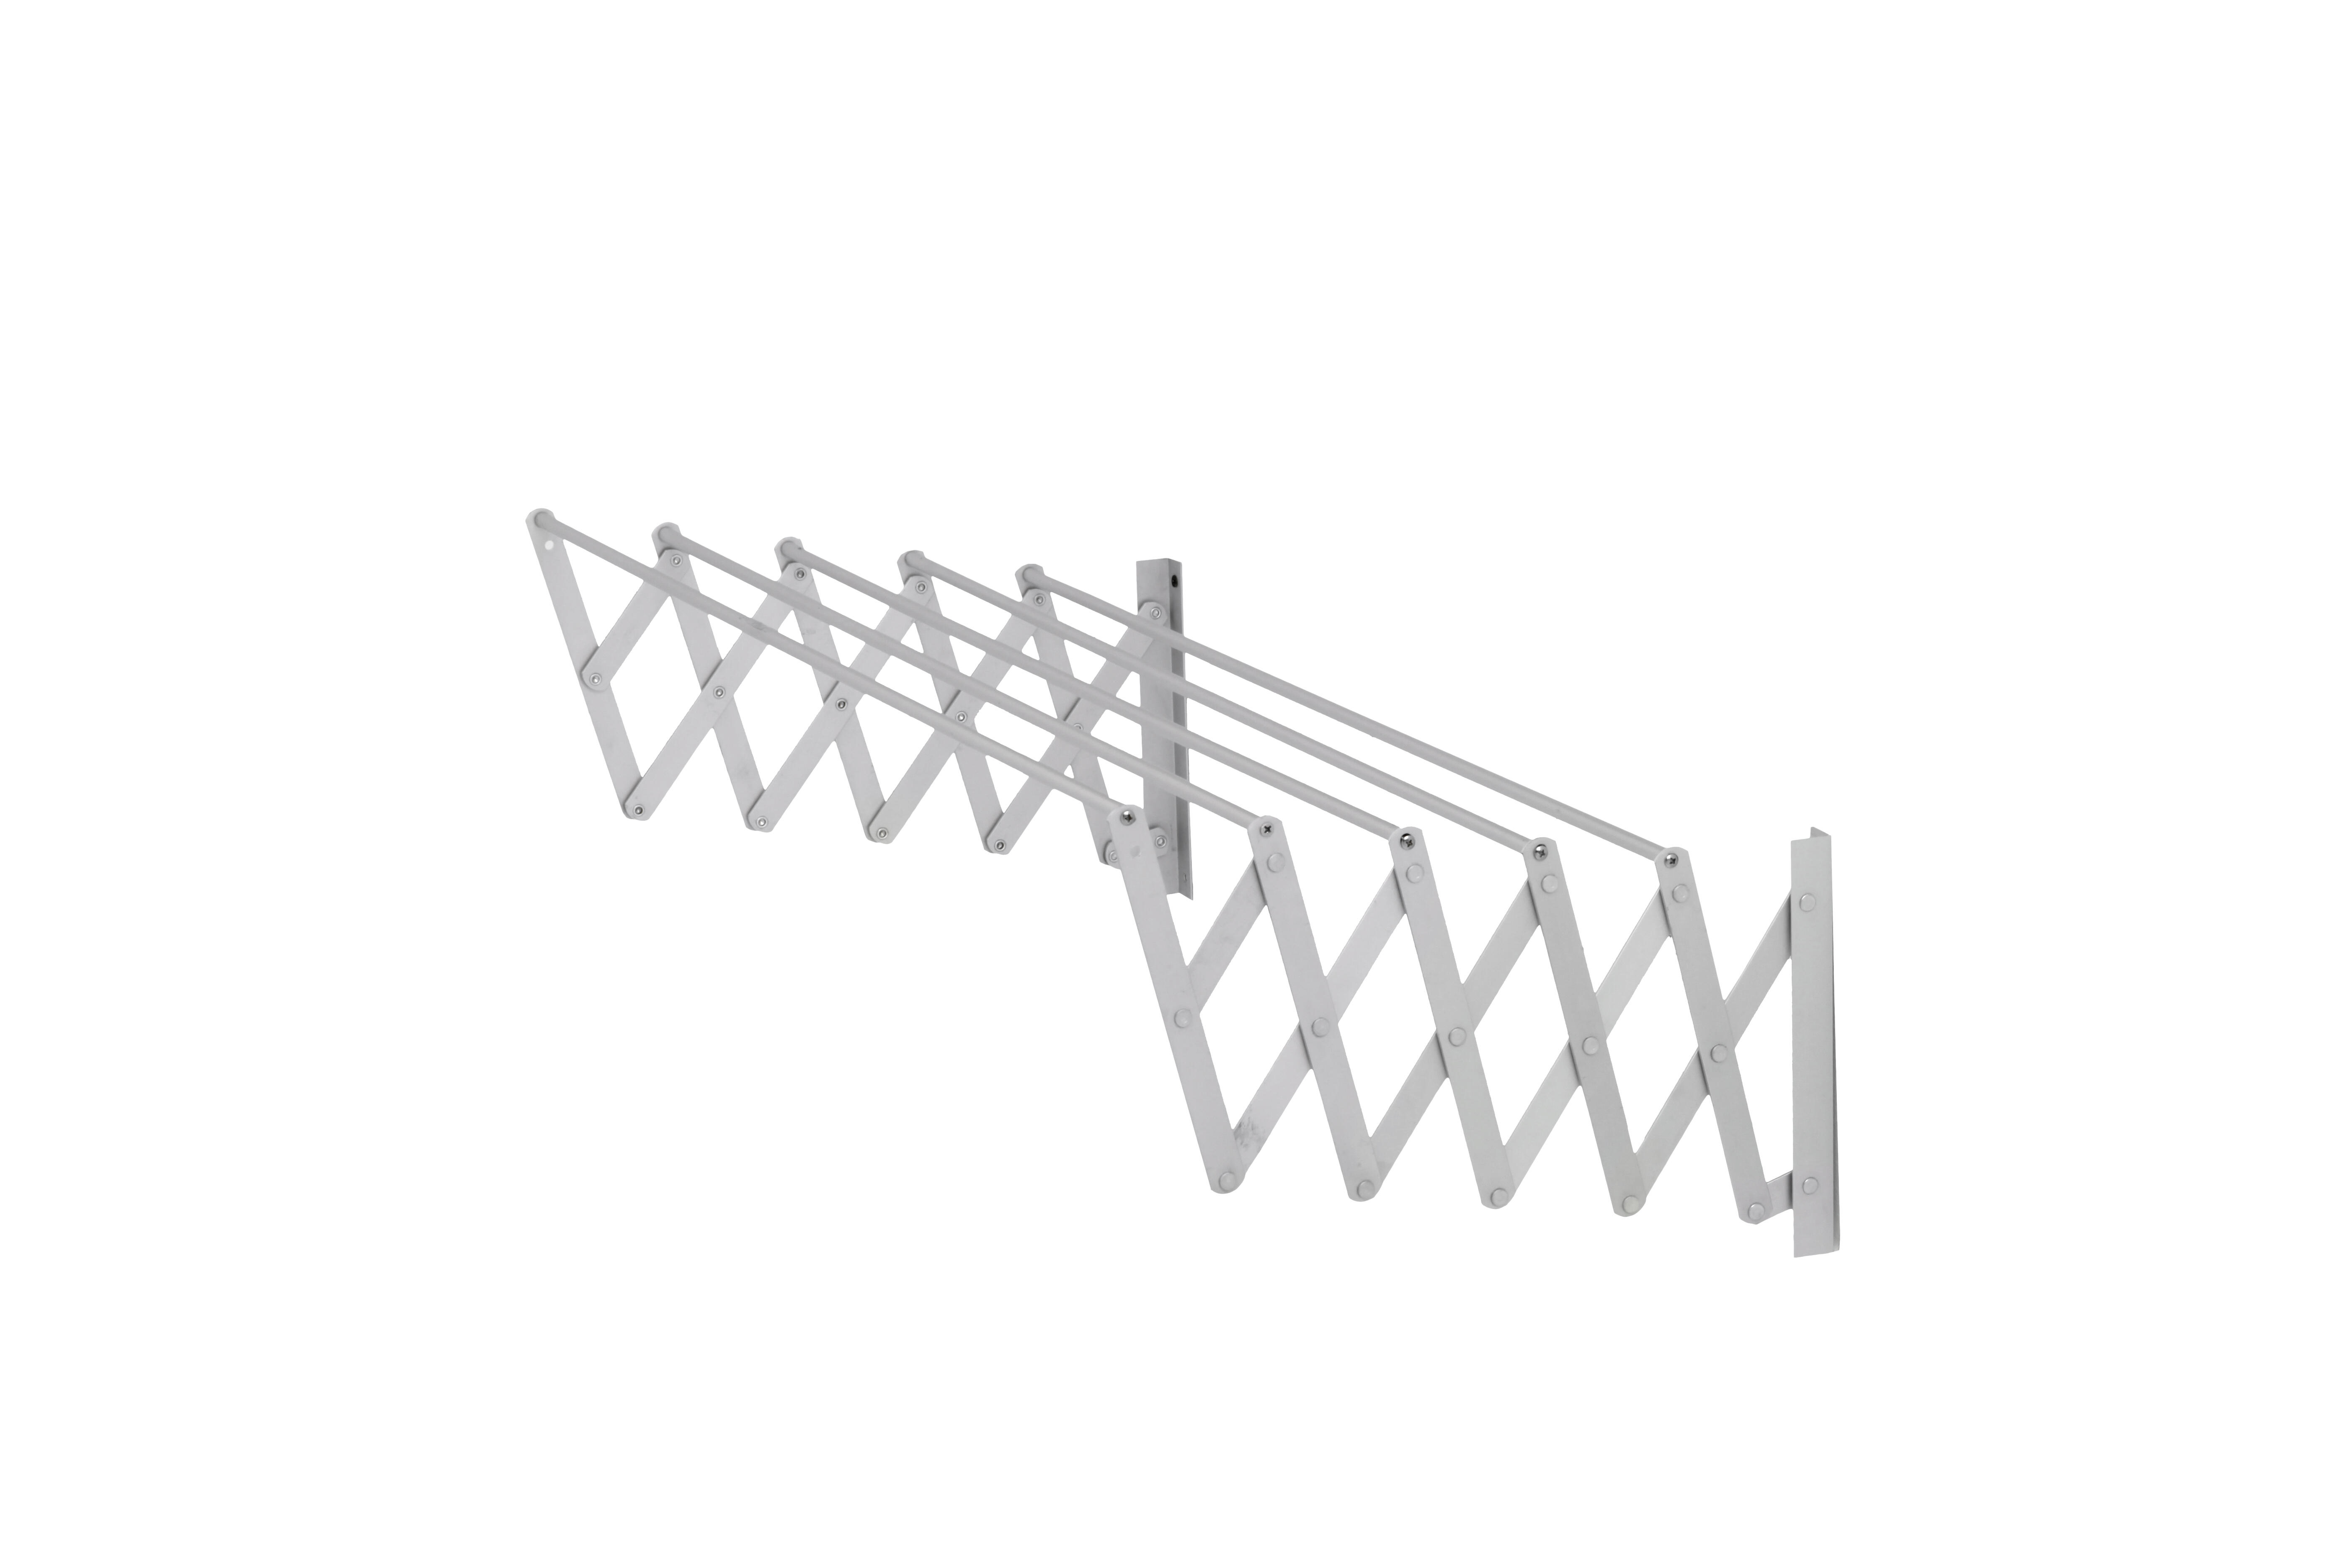 Tendedero barras extensible para de aluminio de 13x121x3 cm | Leroy Merlin